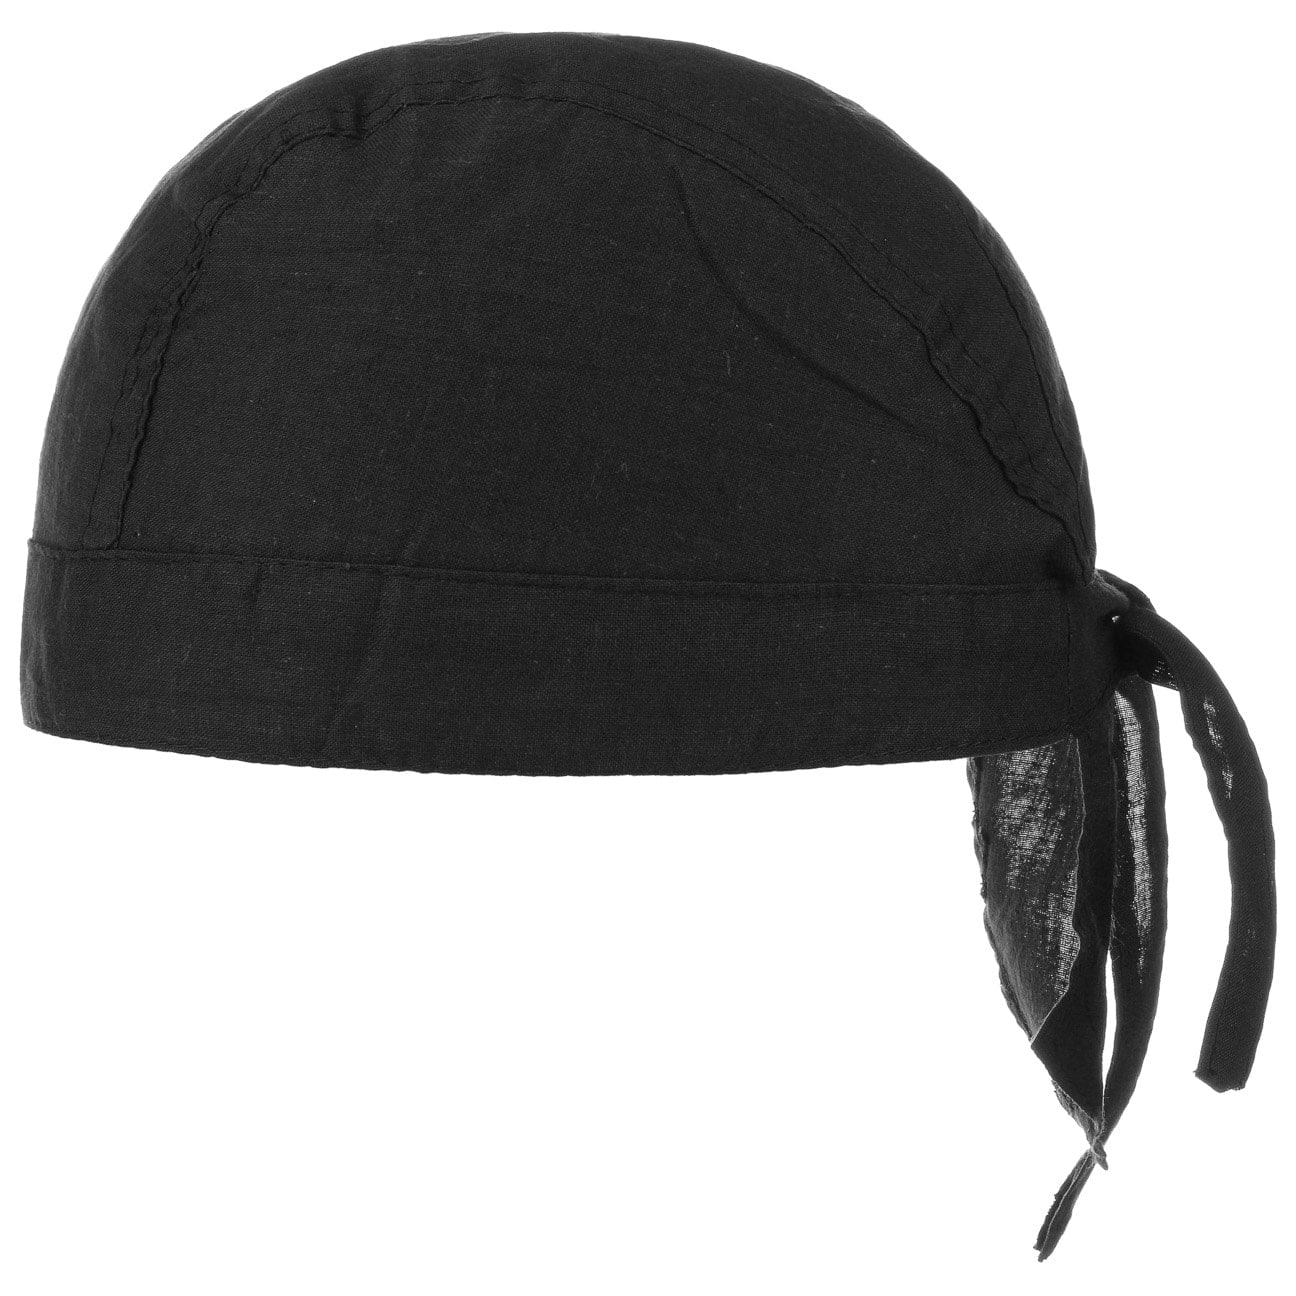 Bandana Corsaire, GBP 5,95 --> Hats, caps & beanies shop online ...